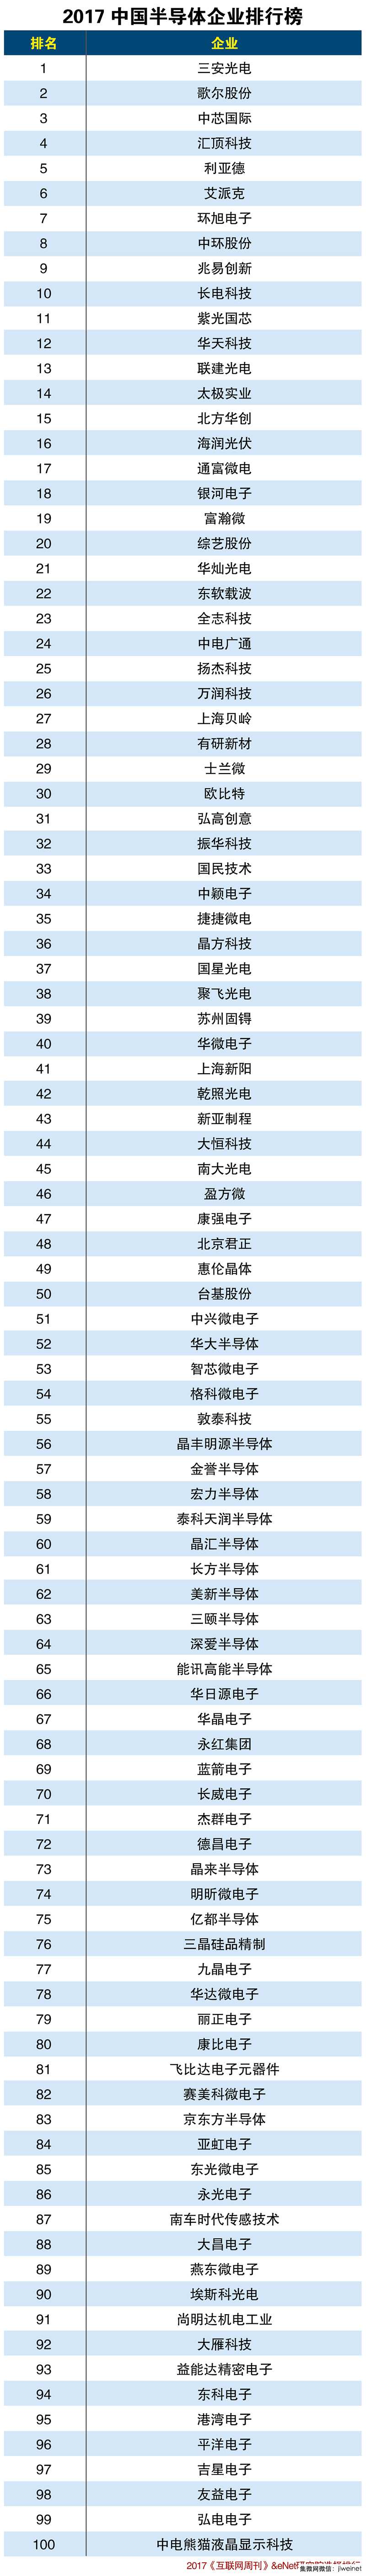 2017中国半导体企业排行榜